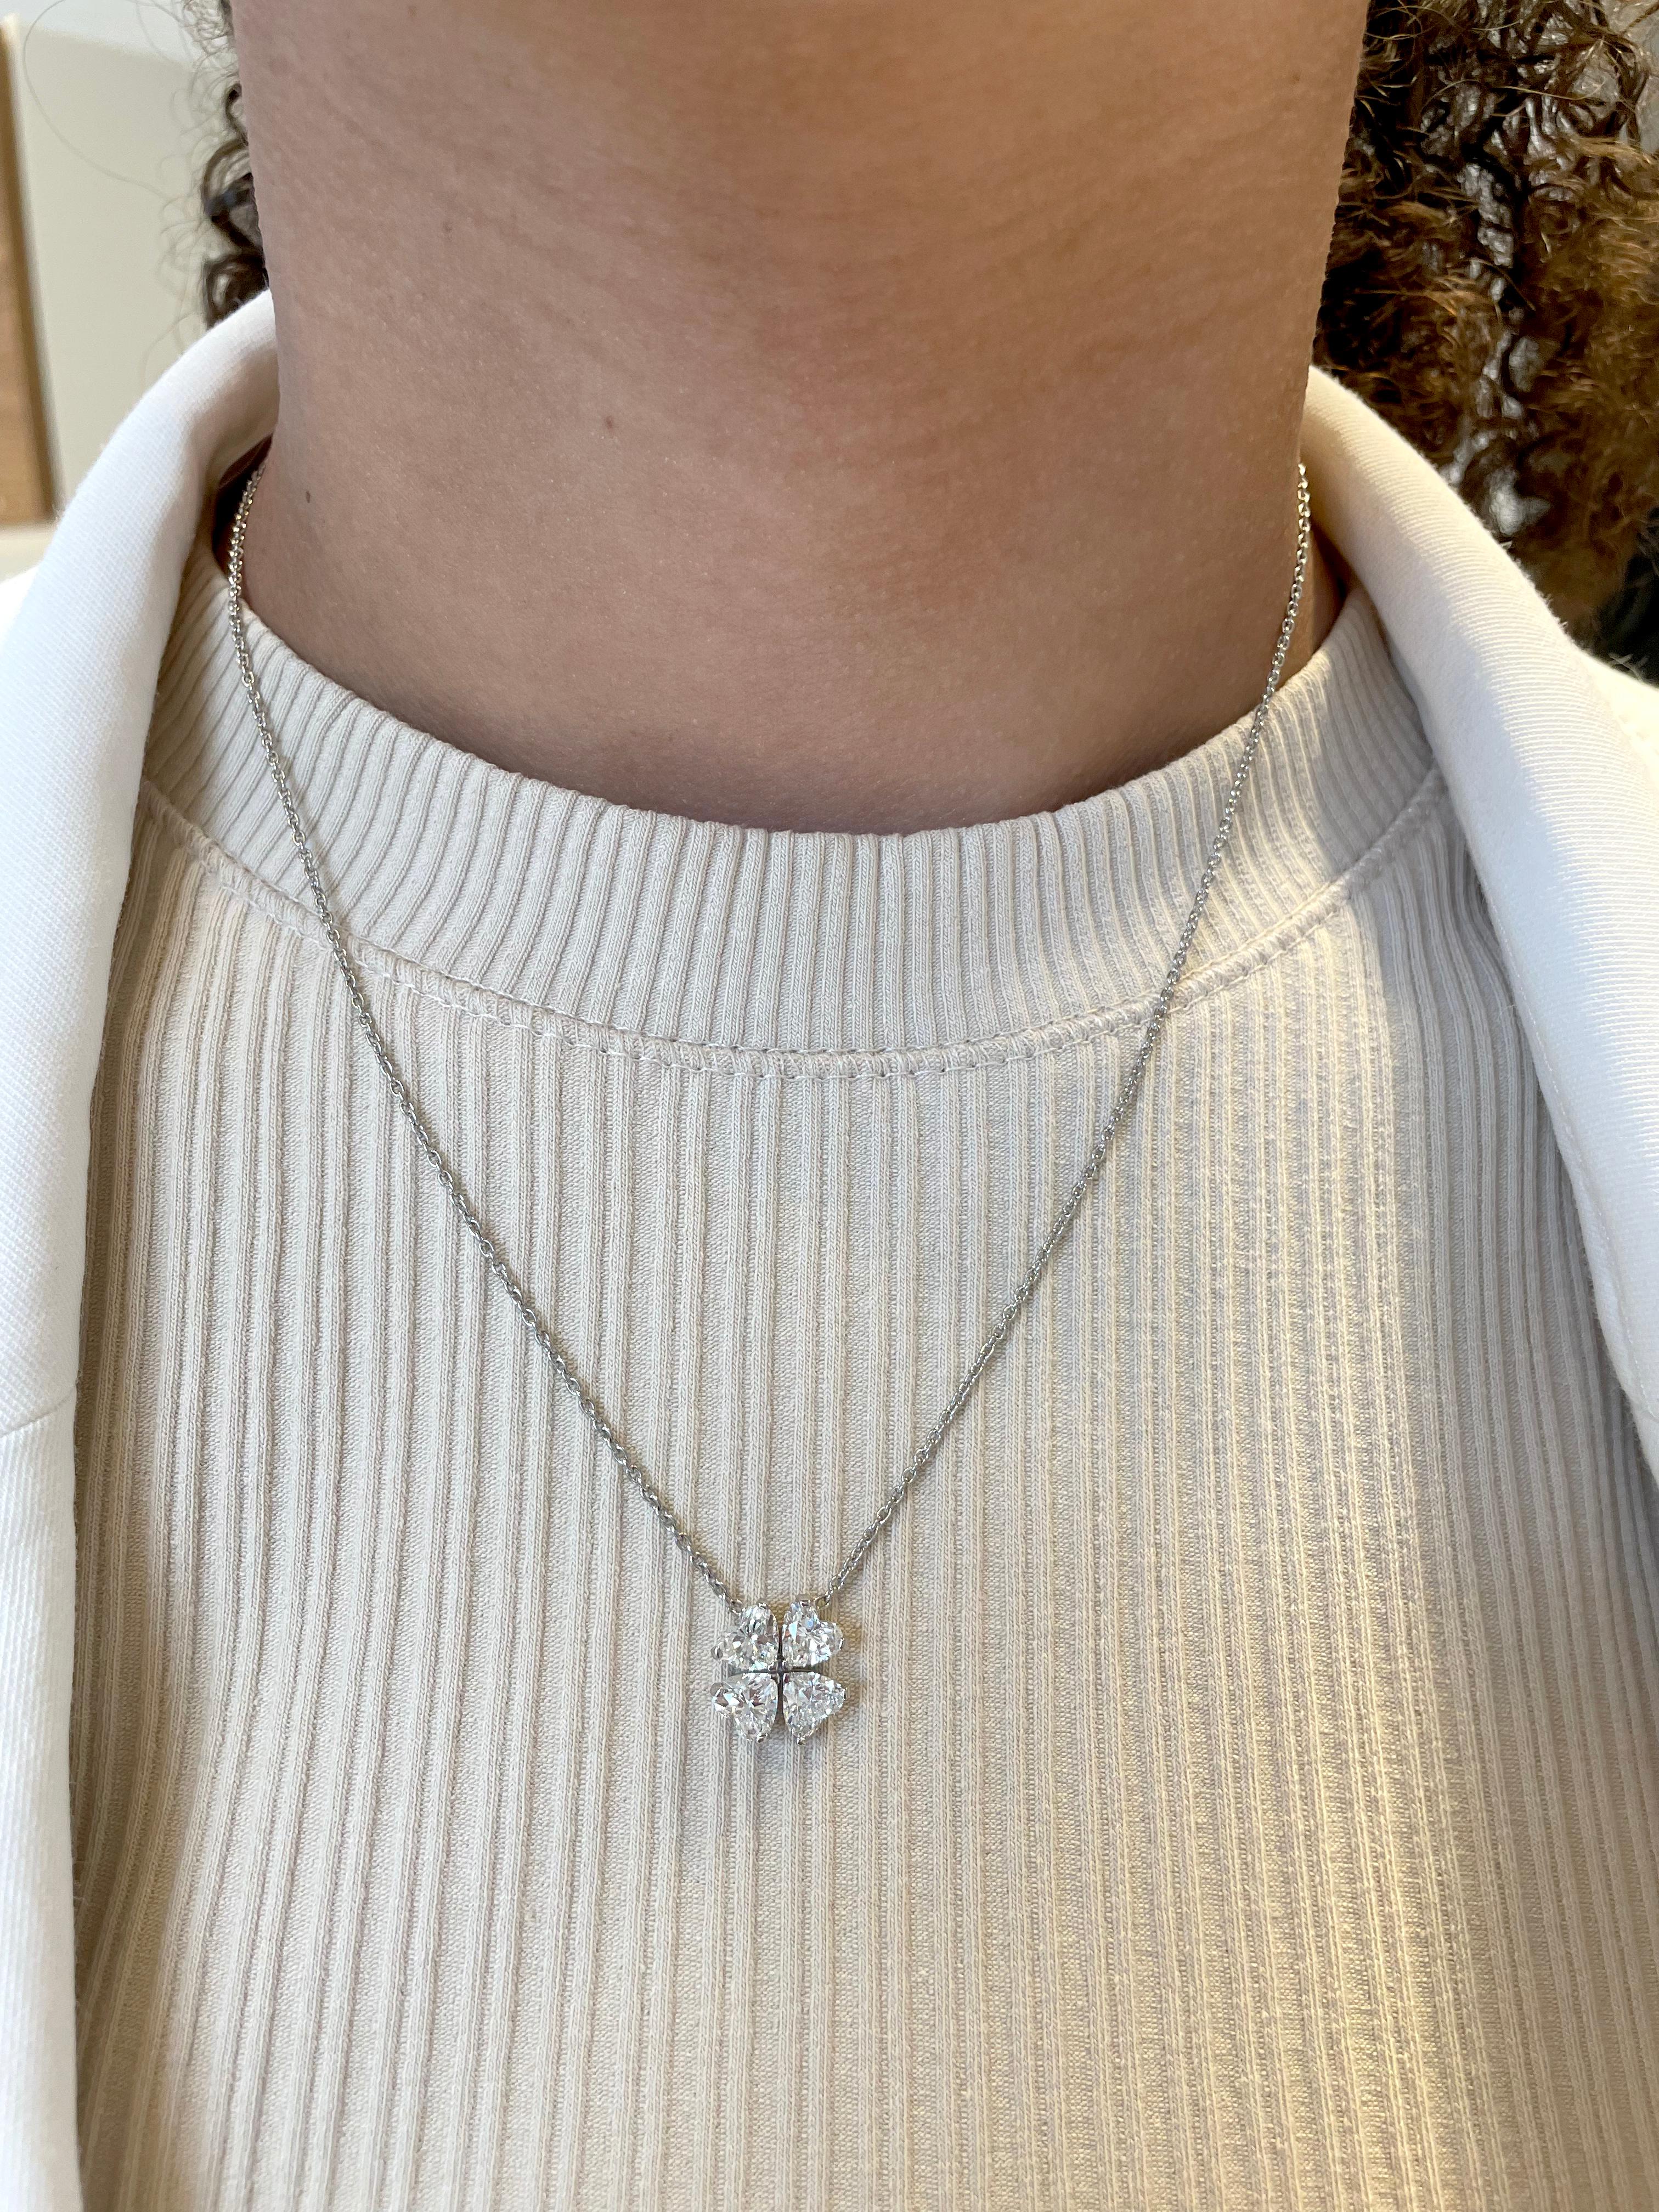 necklace clover shape